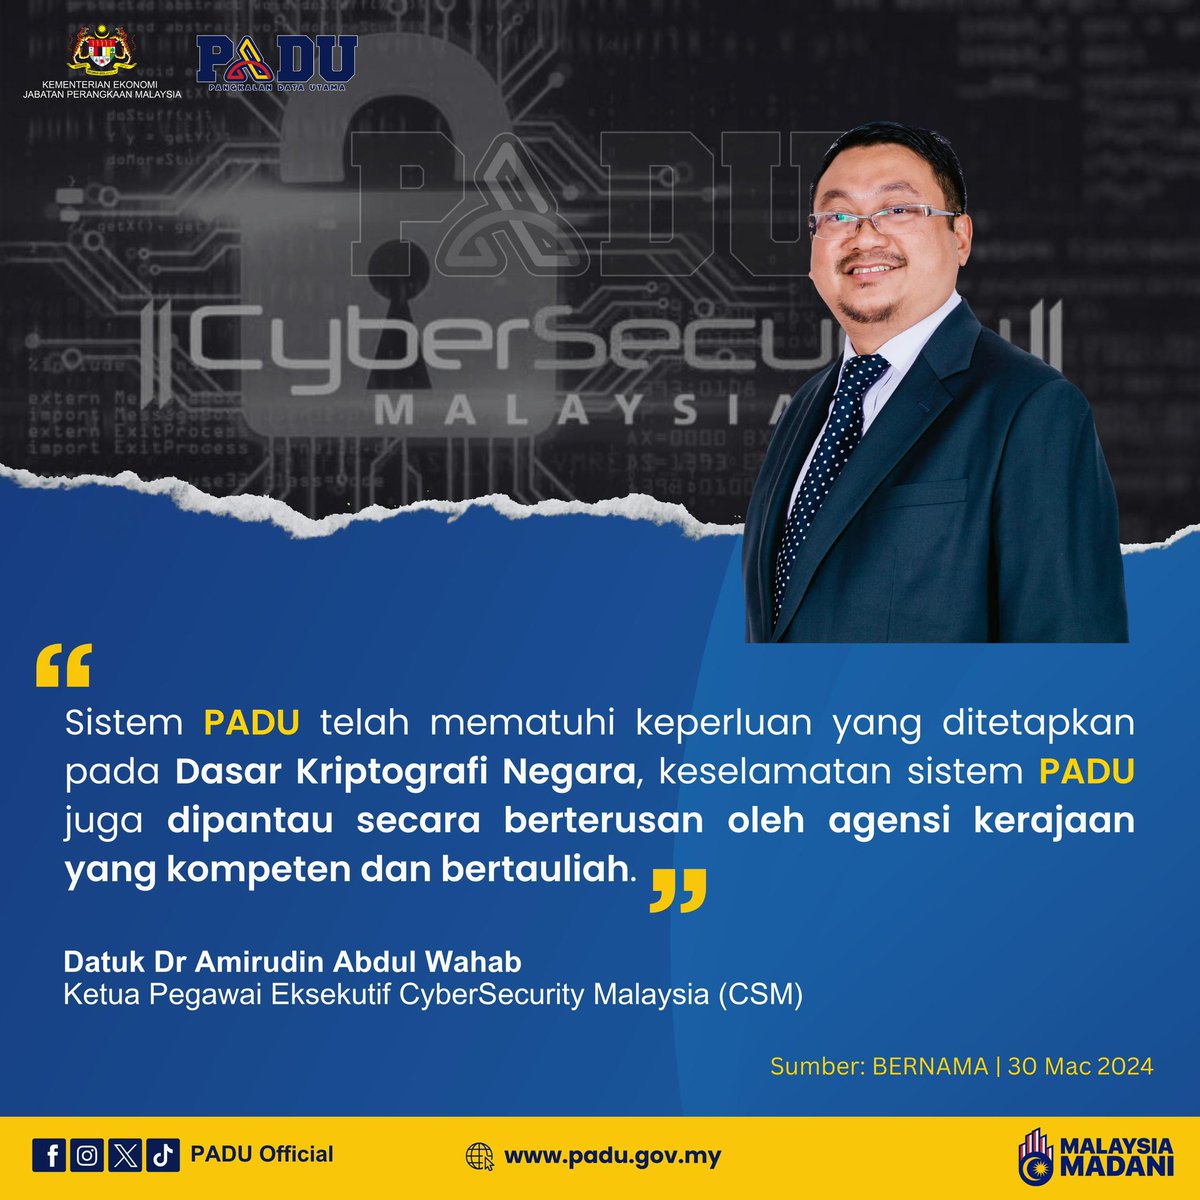 Dikongsikan petikan ucapan Datuk Dr Amirudin Abdul Wahab, Ketua Pegawai Eksekutif CyberSecurity Malaysia (CSM) semasa di temubual oleh wartawan BERNAMA yang diterbitkan pada 30 Mac 2024.

#PADUSejahtera
#MalaysiaPADU
#StatsMalaysia
#MalaysiaMadani